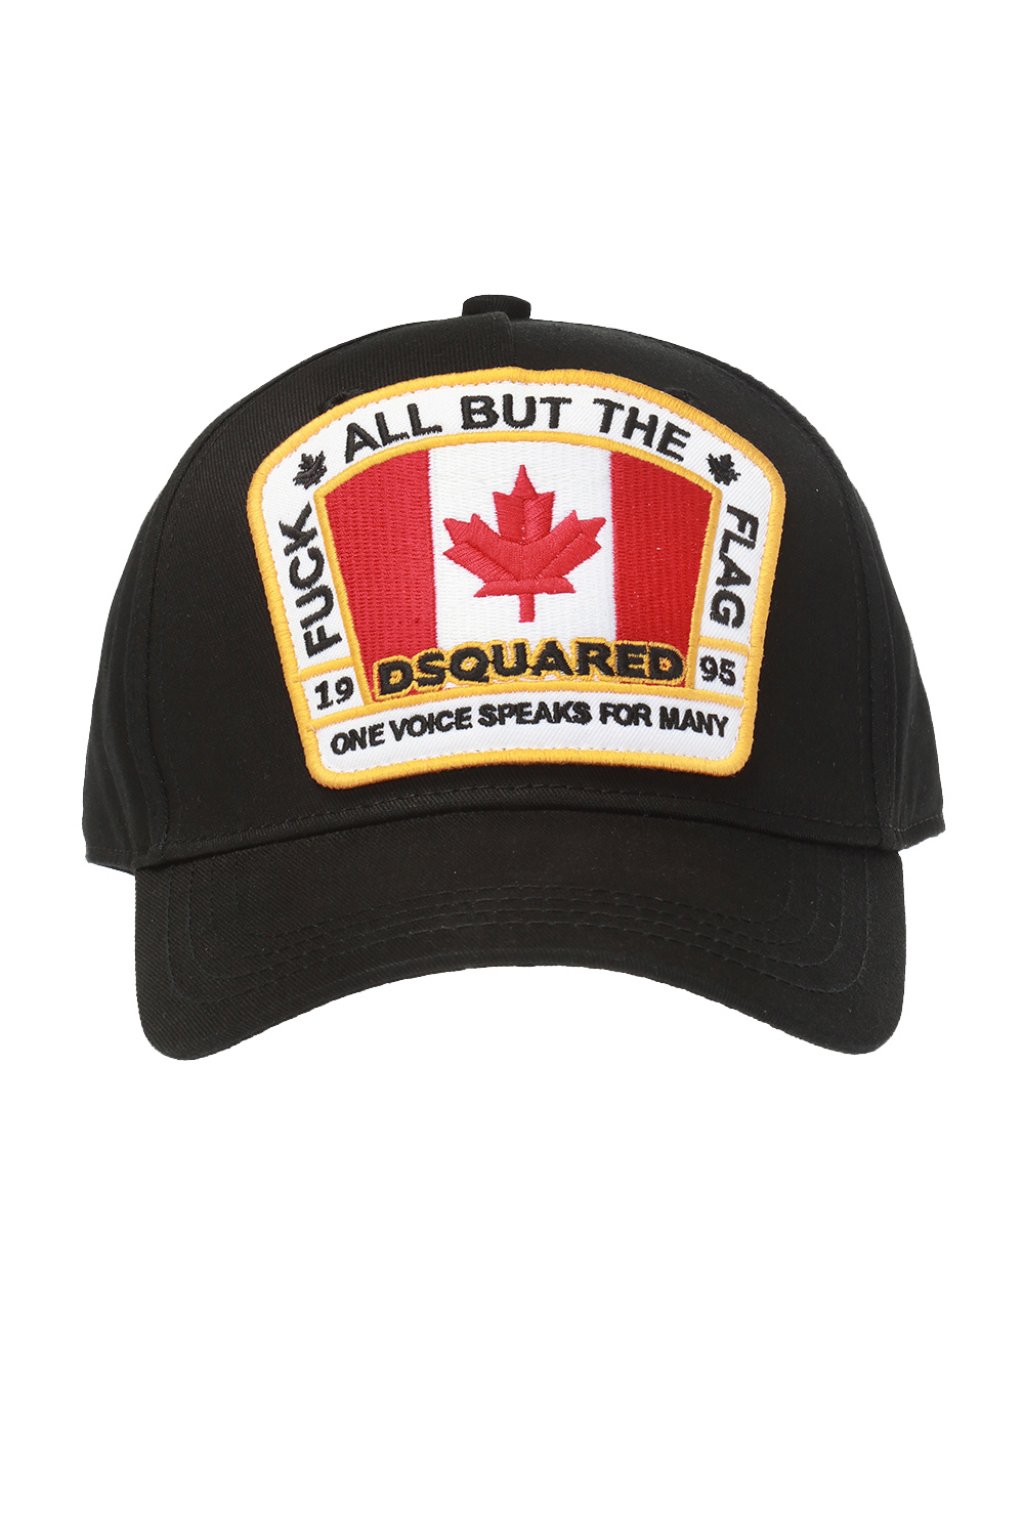 buy dsquared cap